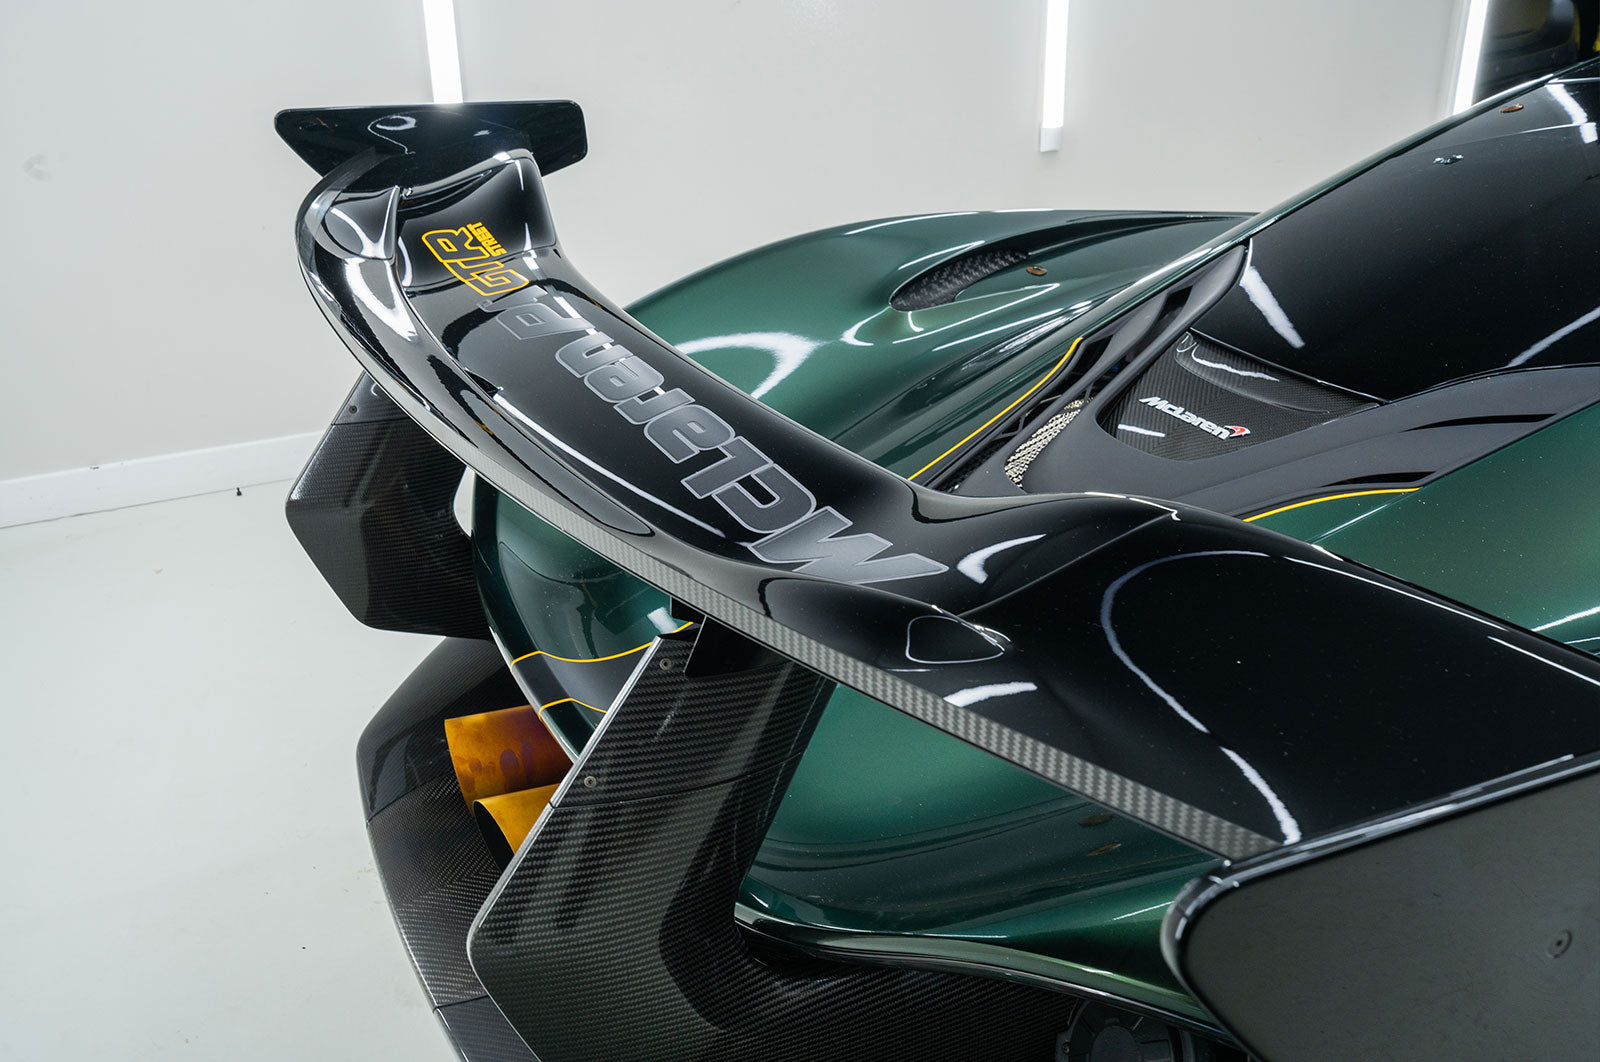 McLaren P1 - Supergloss Metallic Midnight Green